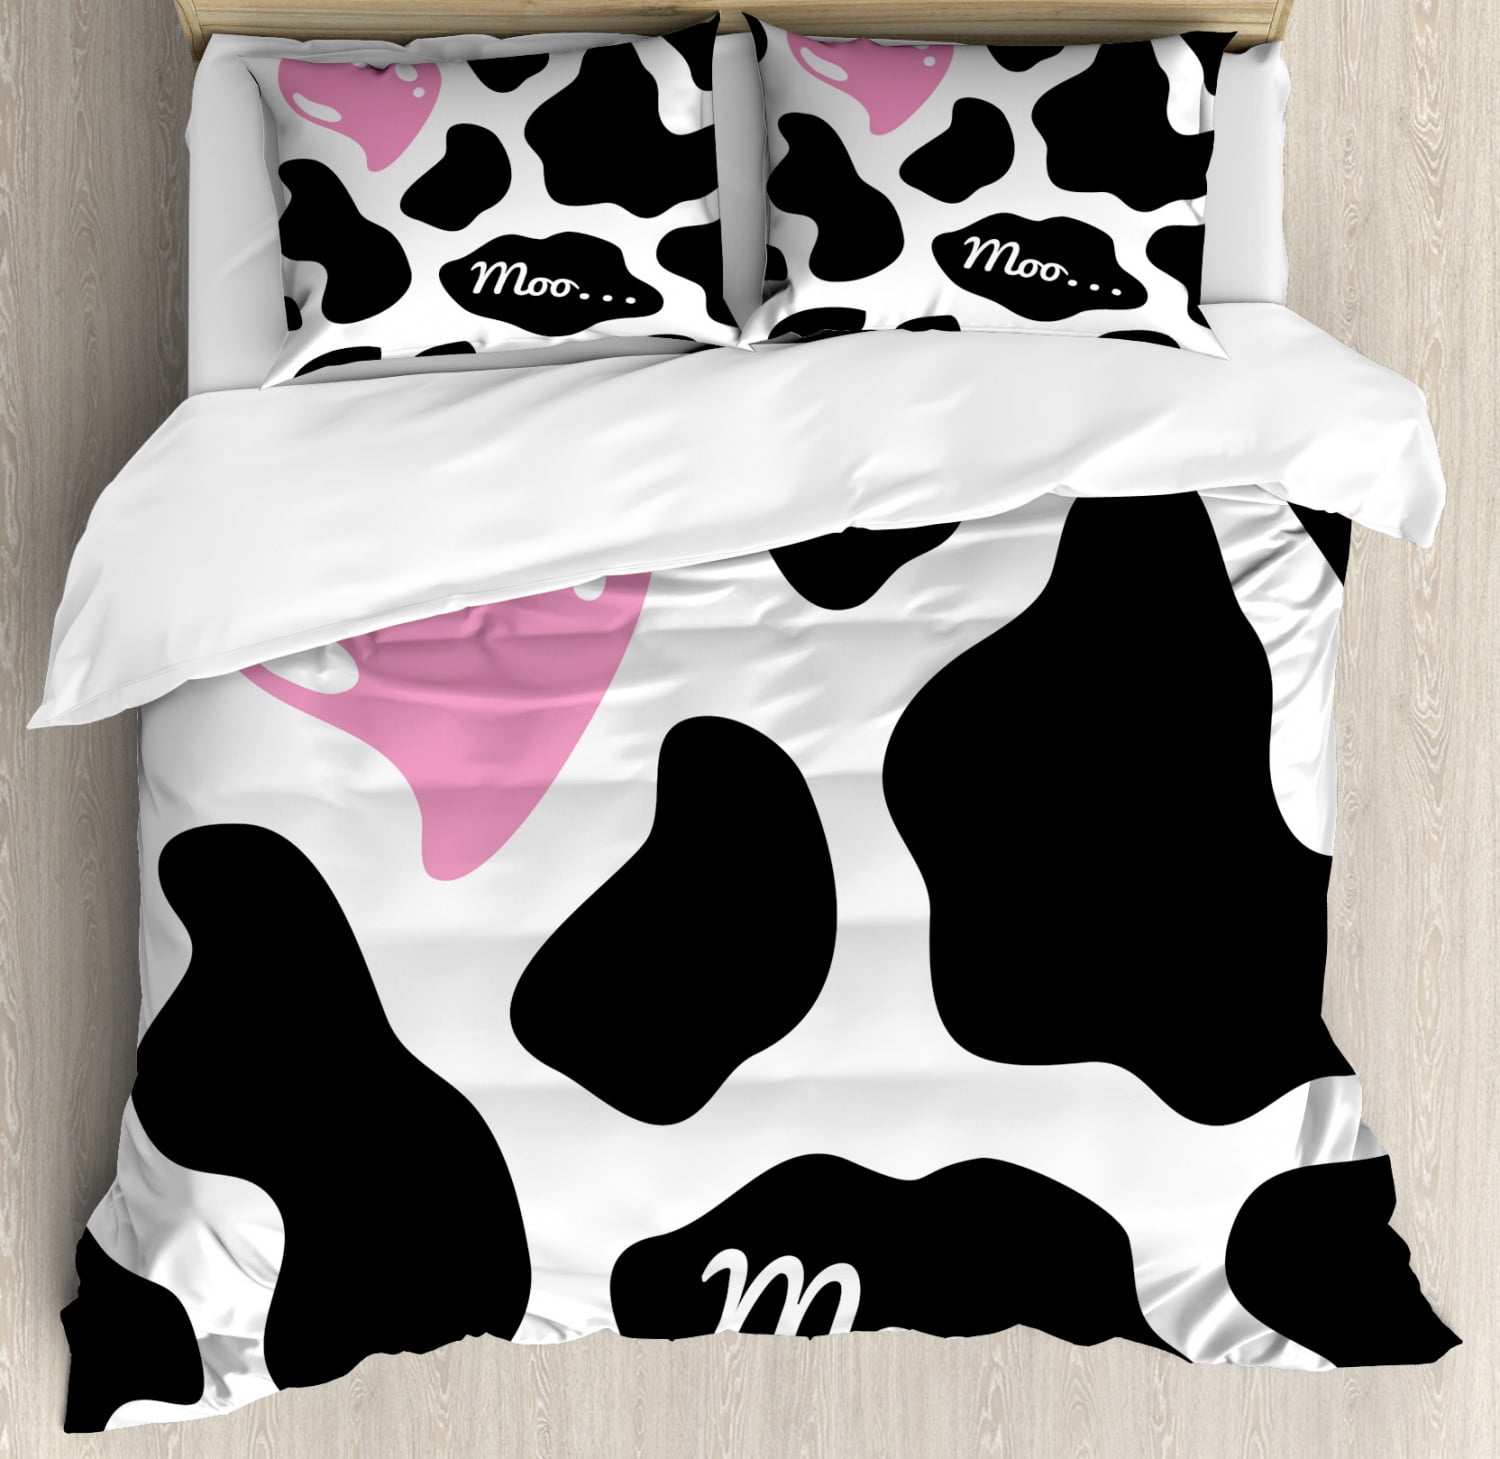 Cow Print Duvet Cover Set Queen Size, Duvet Cover Cow Print Bedding